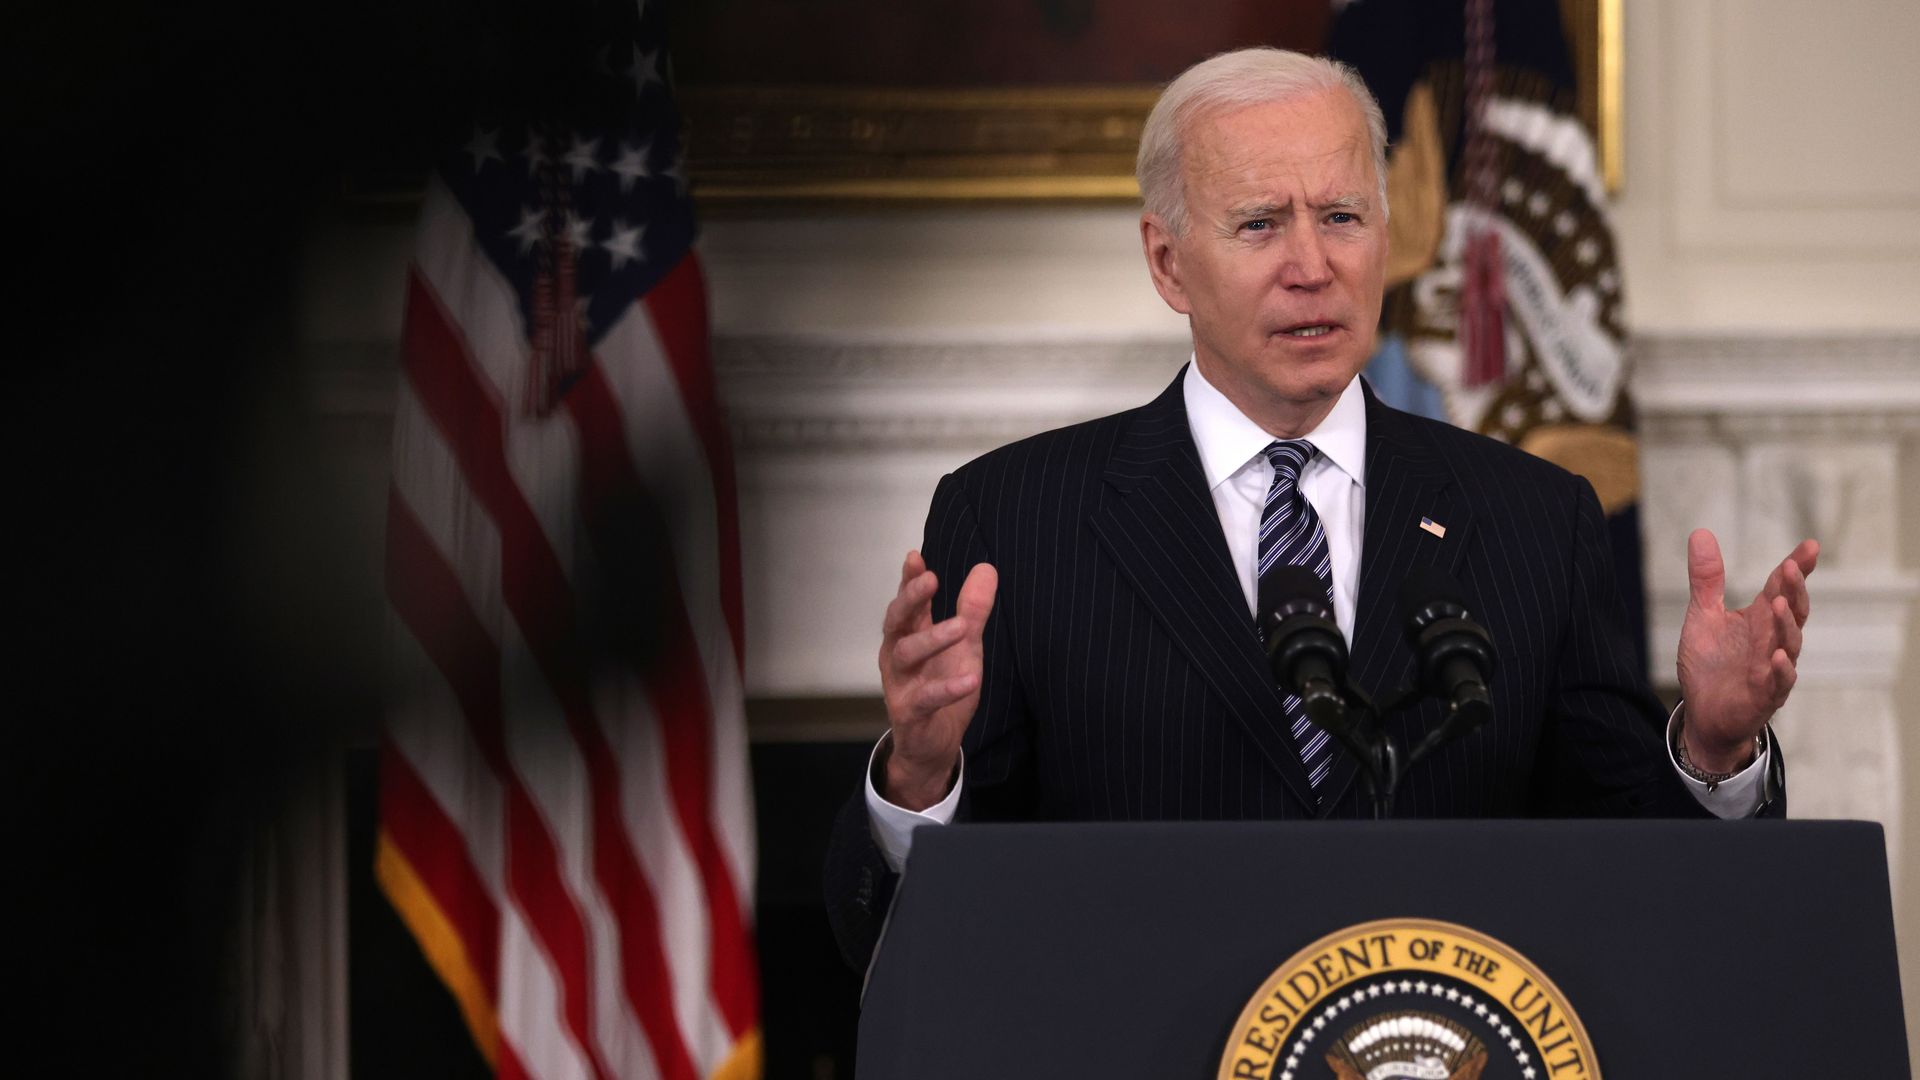 President Biden speaks behind podium